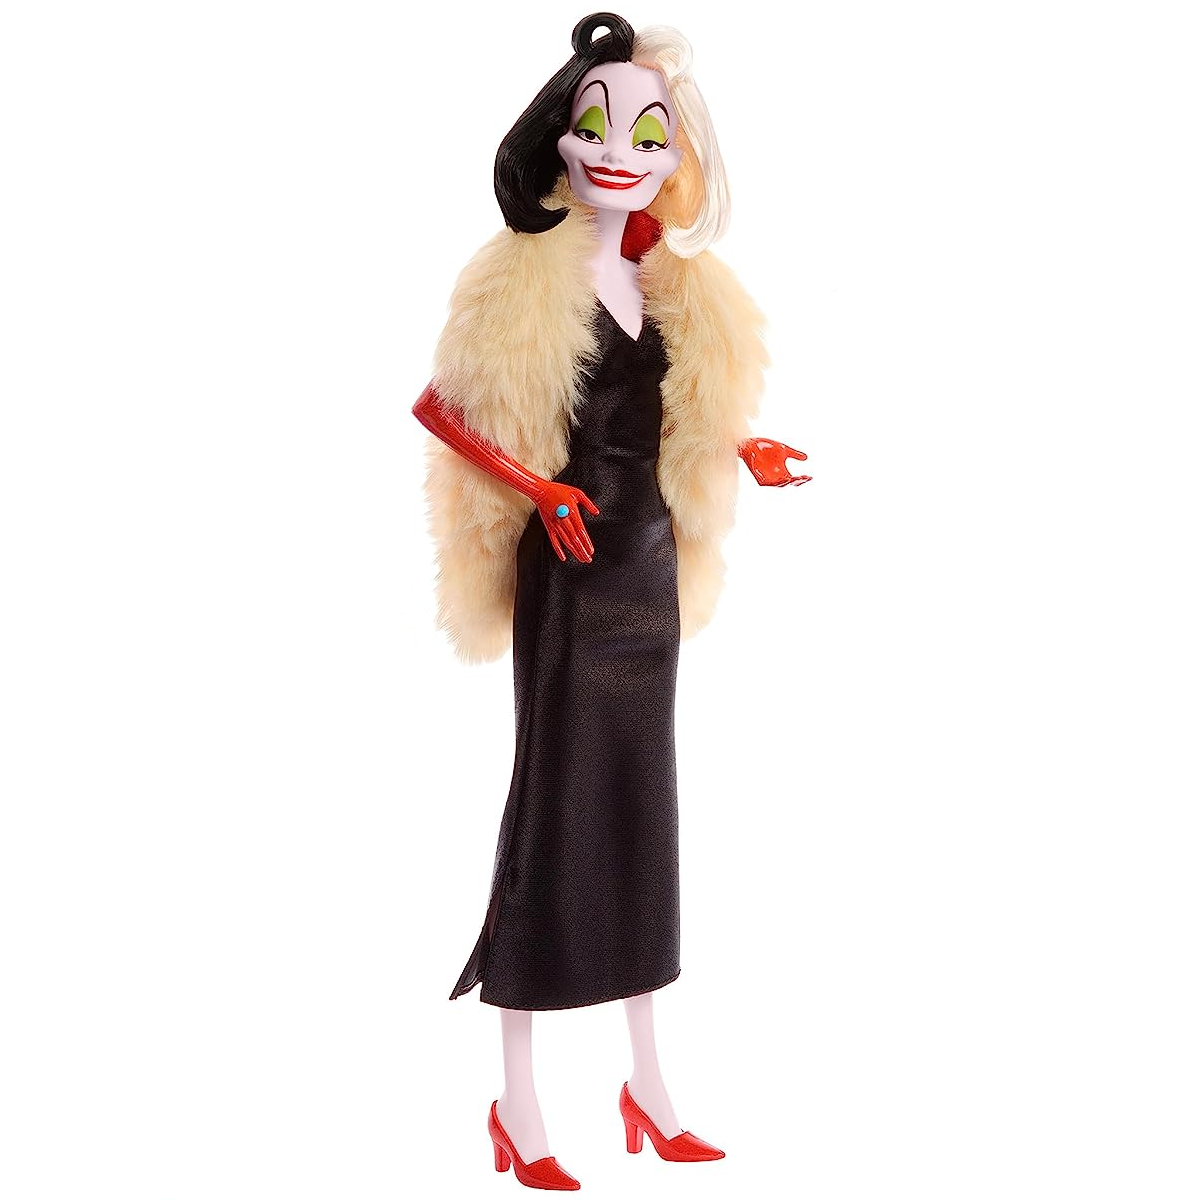 Disney Villains Cruella de Vil Fashion Doll